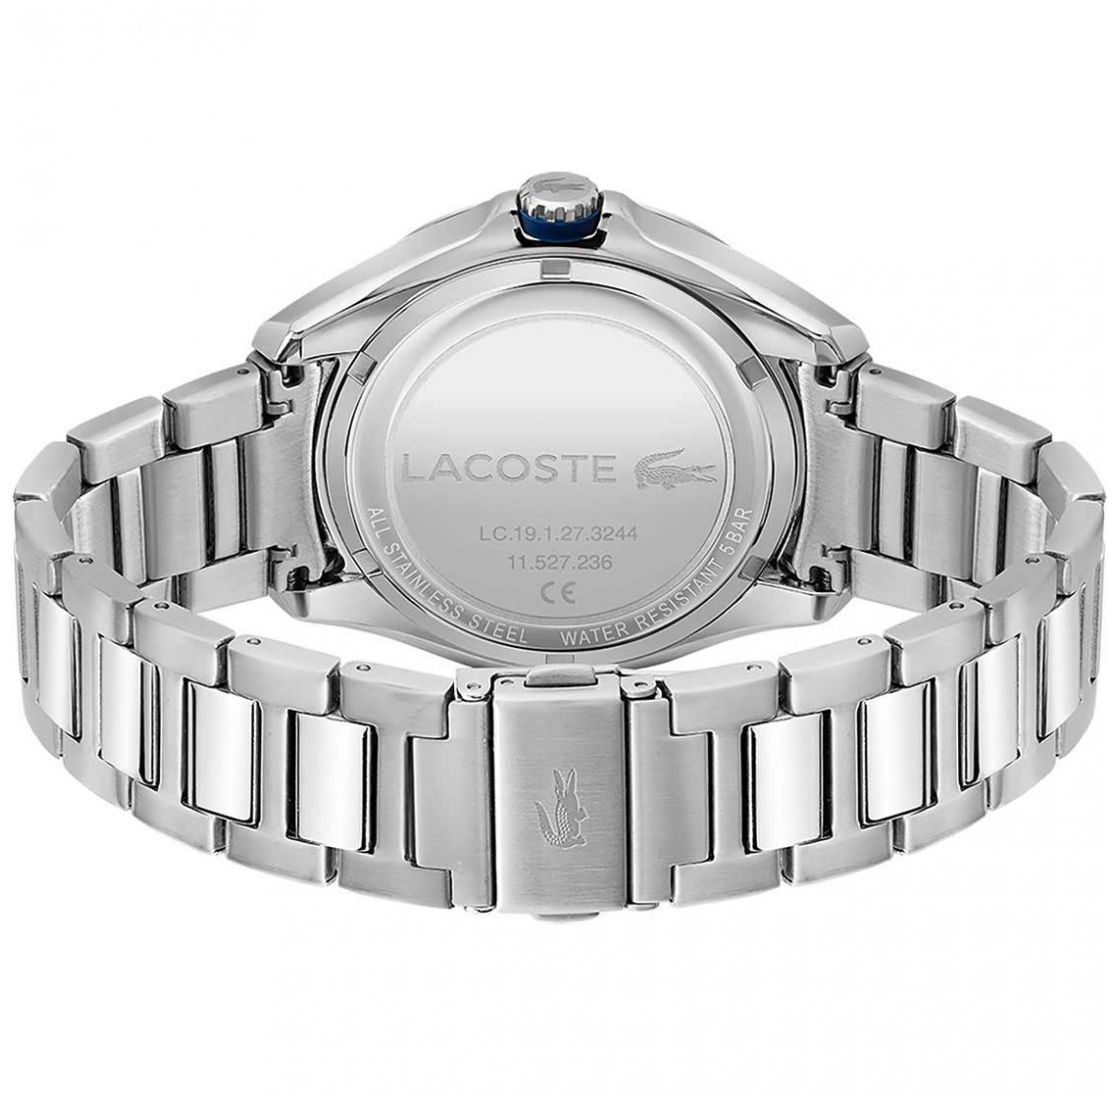 Reloj Lacoste para Hombre Modelo Elo 2011127